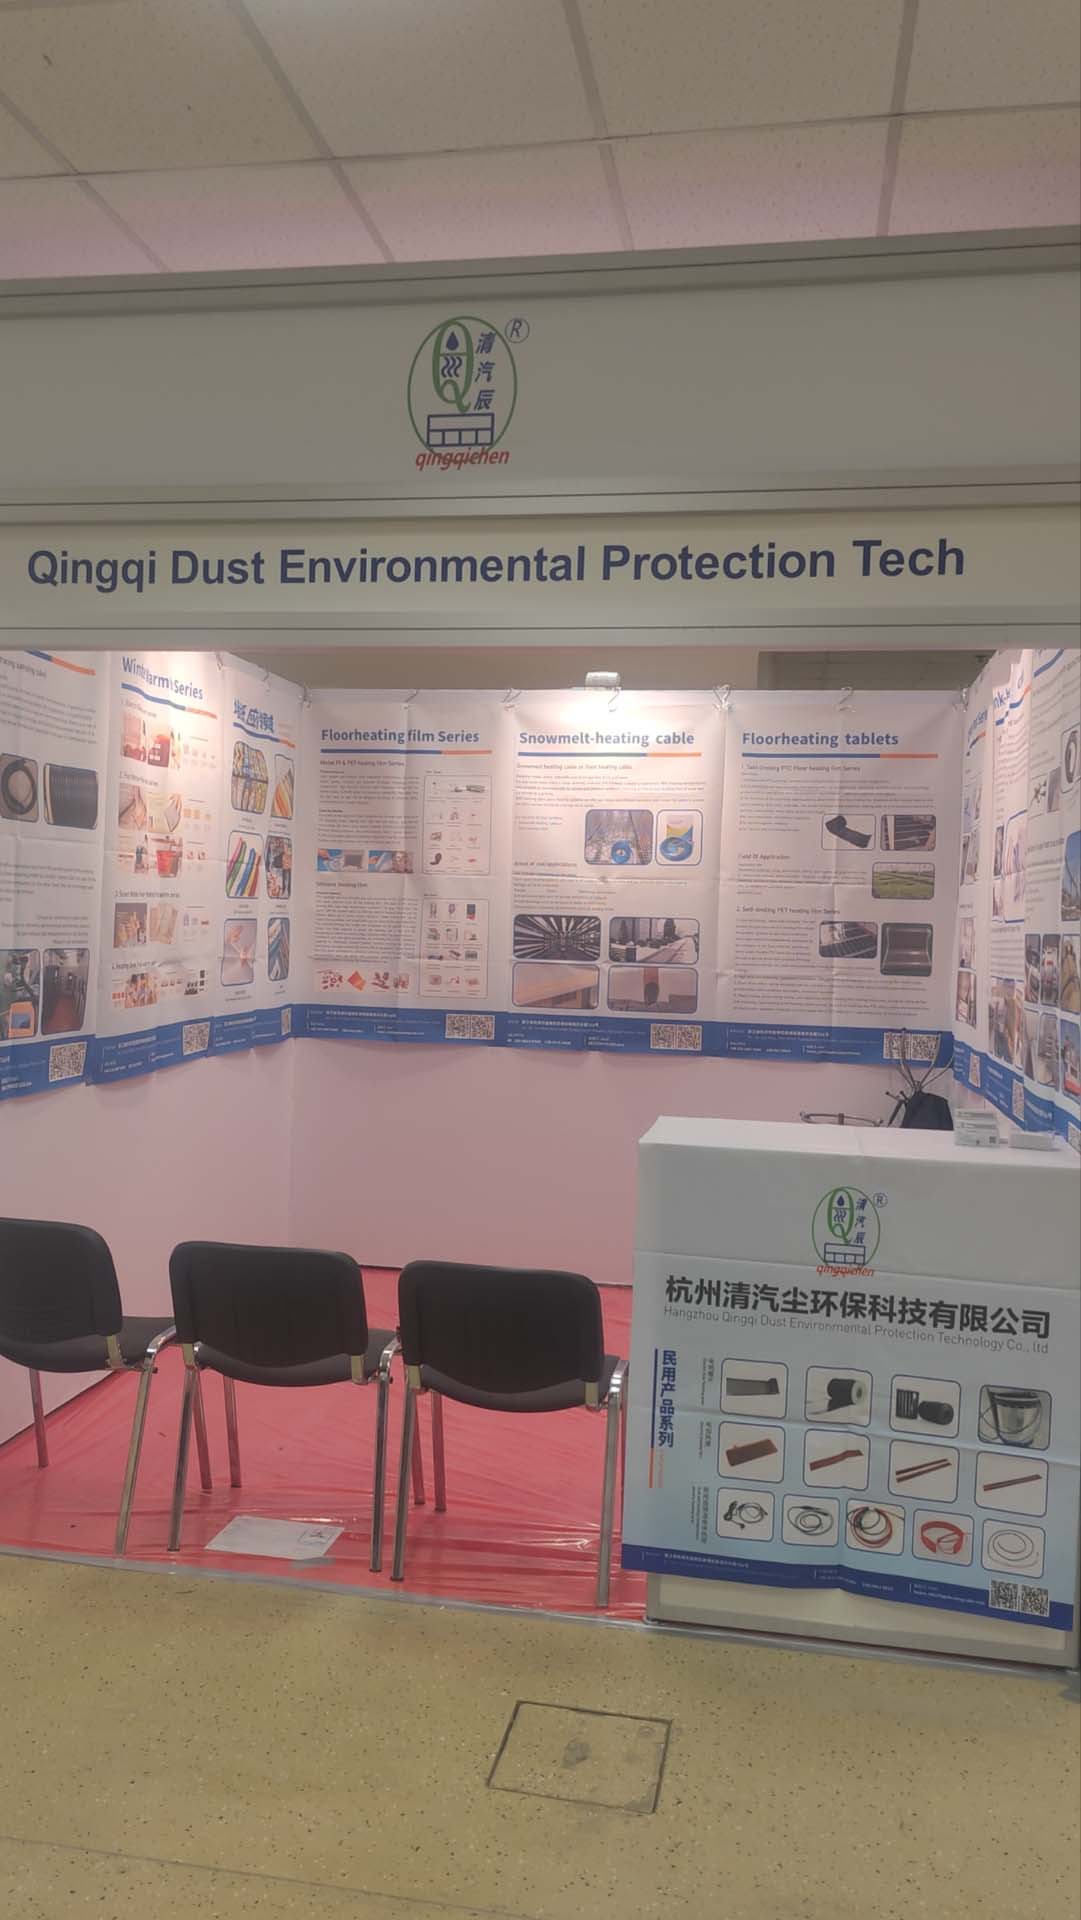  Hangzhou Qingqi Dust Environmental Protection Technology Co., Ltd. di 19-21 Adarê de pêşangeha CabeX li Moskowê, Rûsya, xêrhatina hevalên rûsî li pêşangehê bikin da ku danûstandin û danûstandina rêbernameyê bikin 